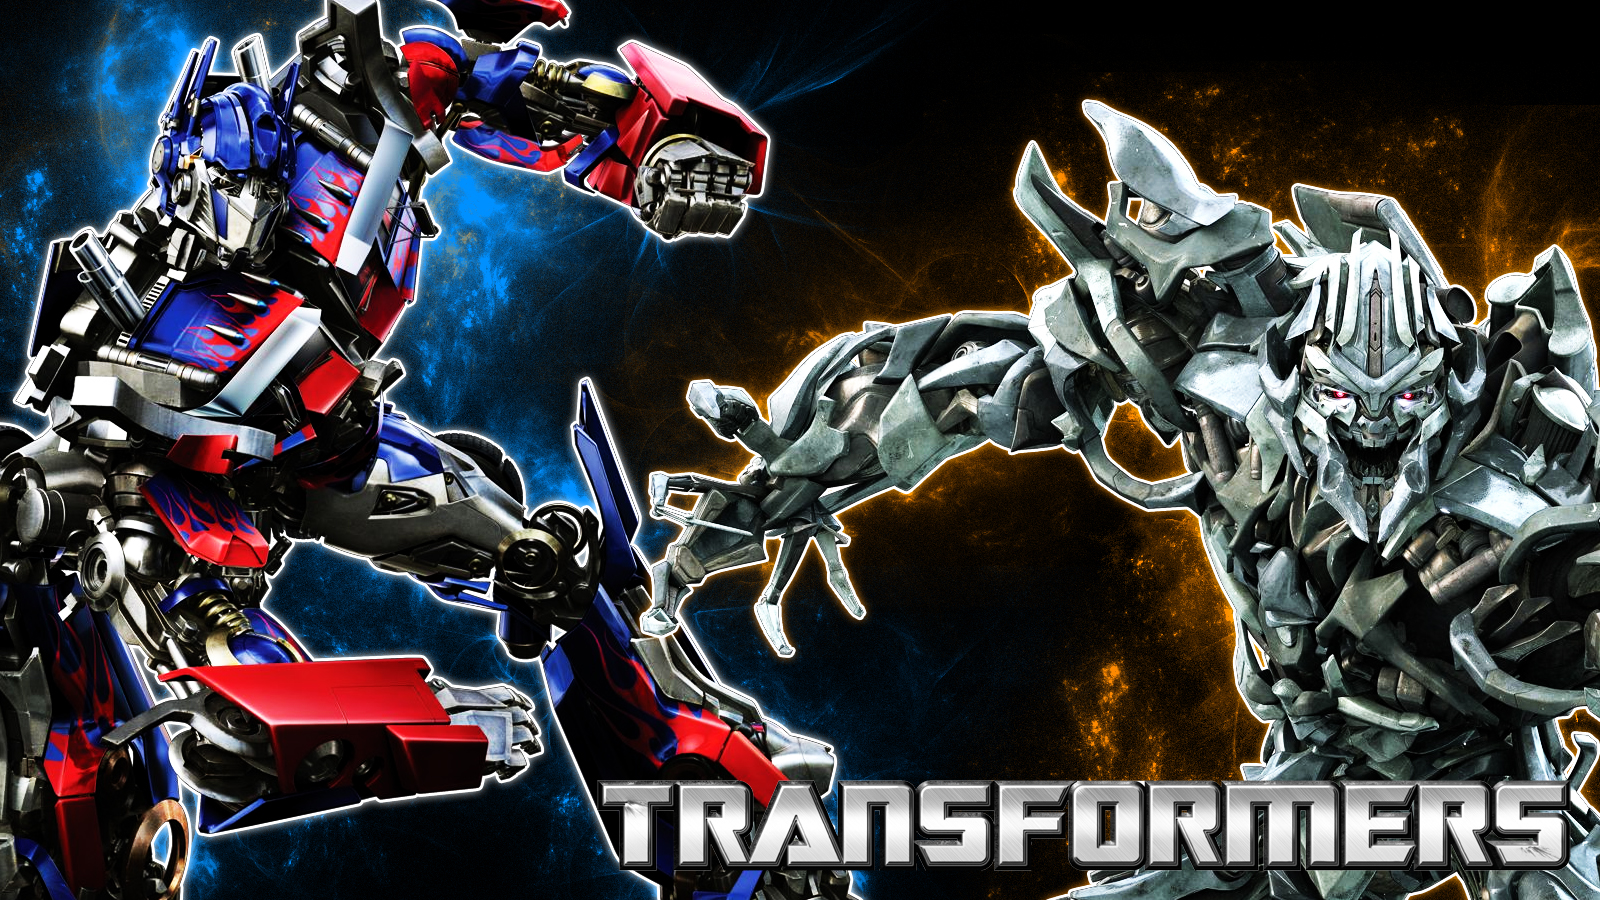 Galvatron Transformers Wallpaper Best Cool